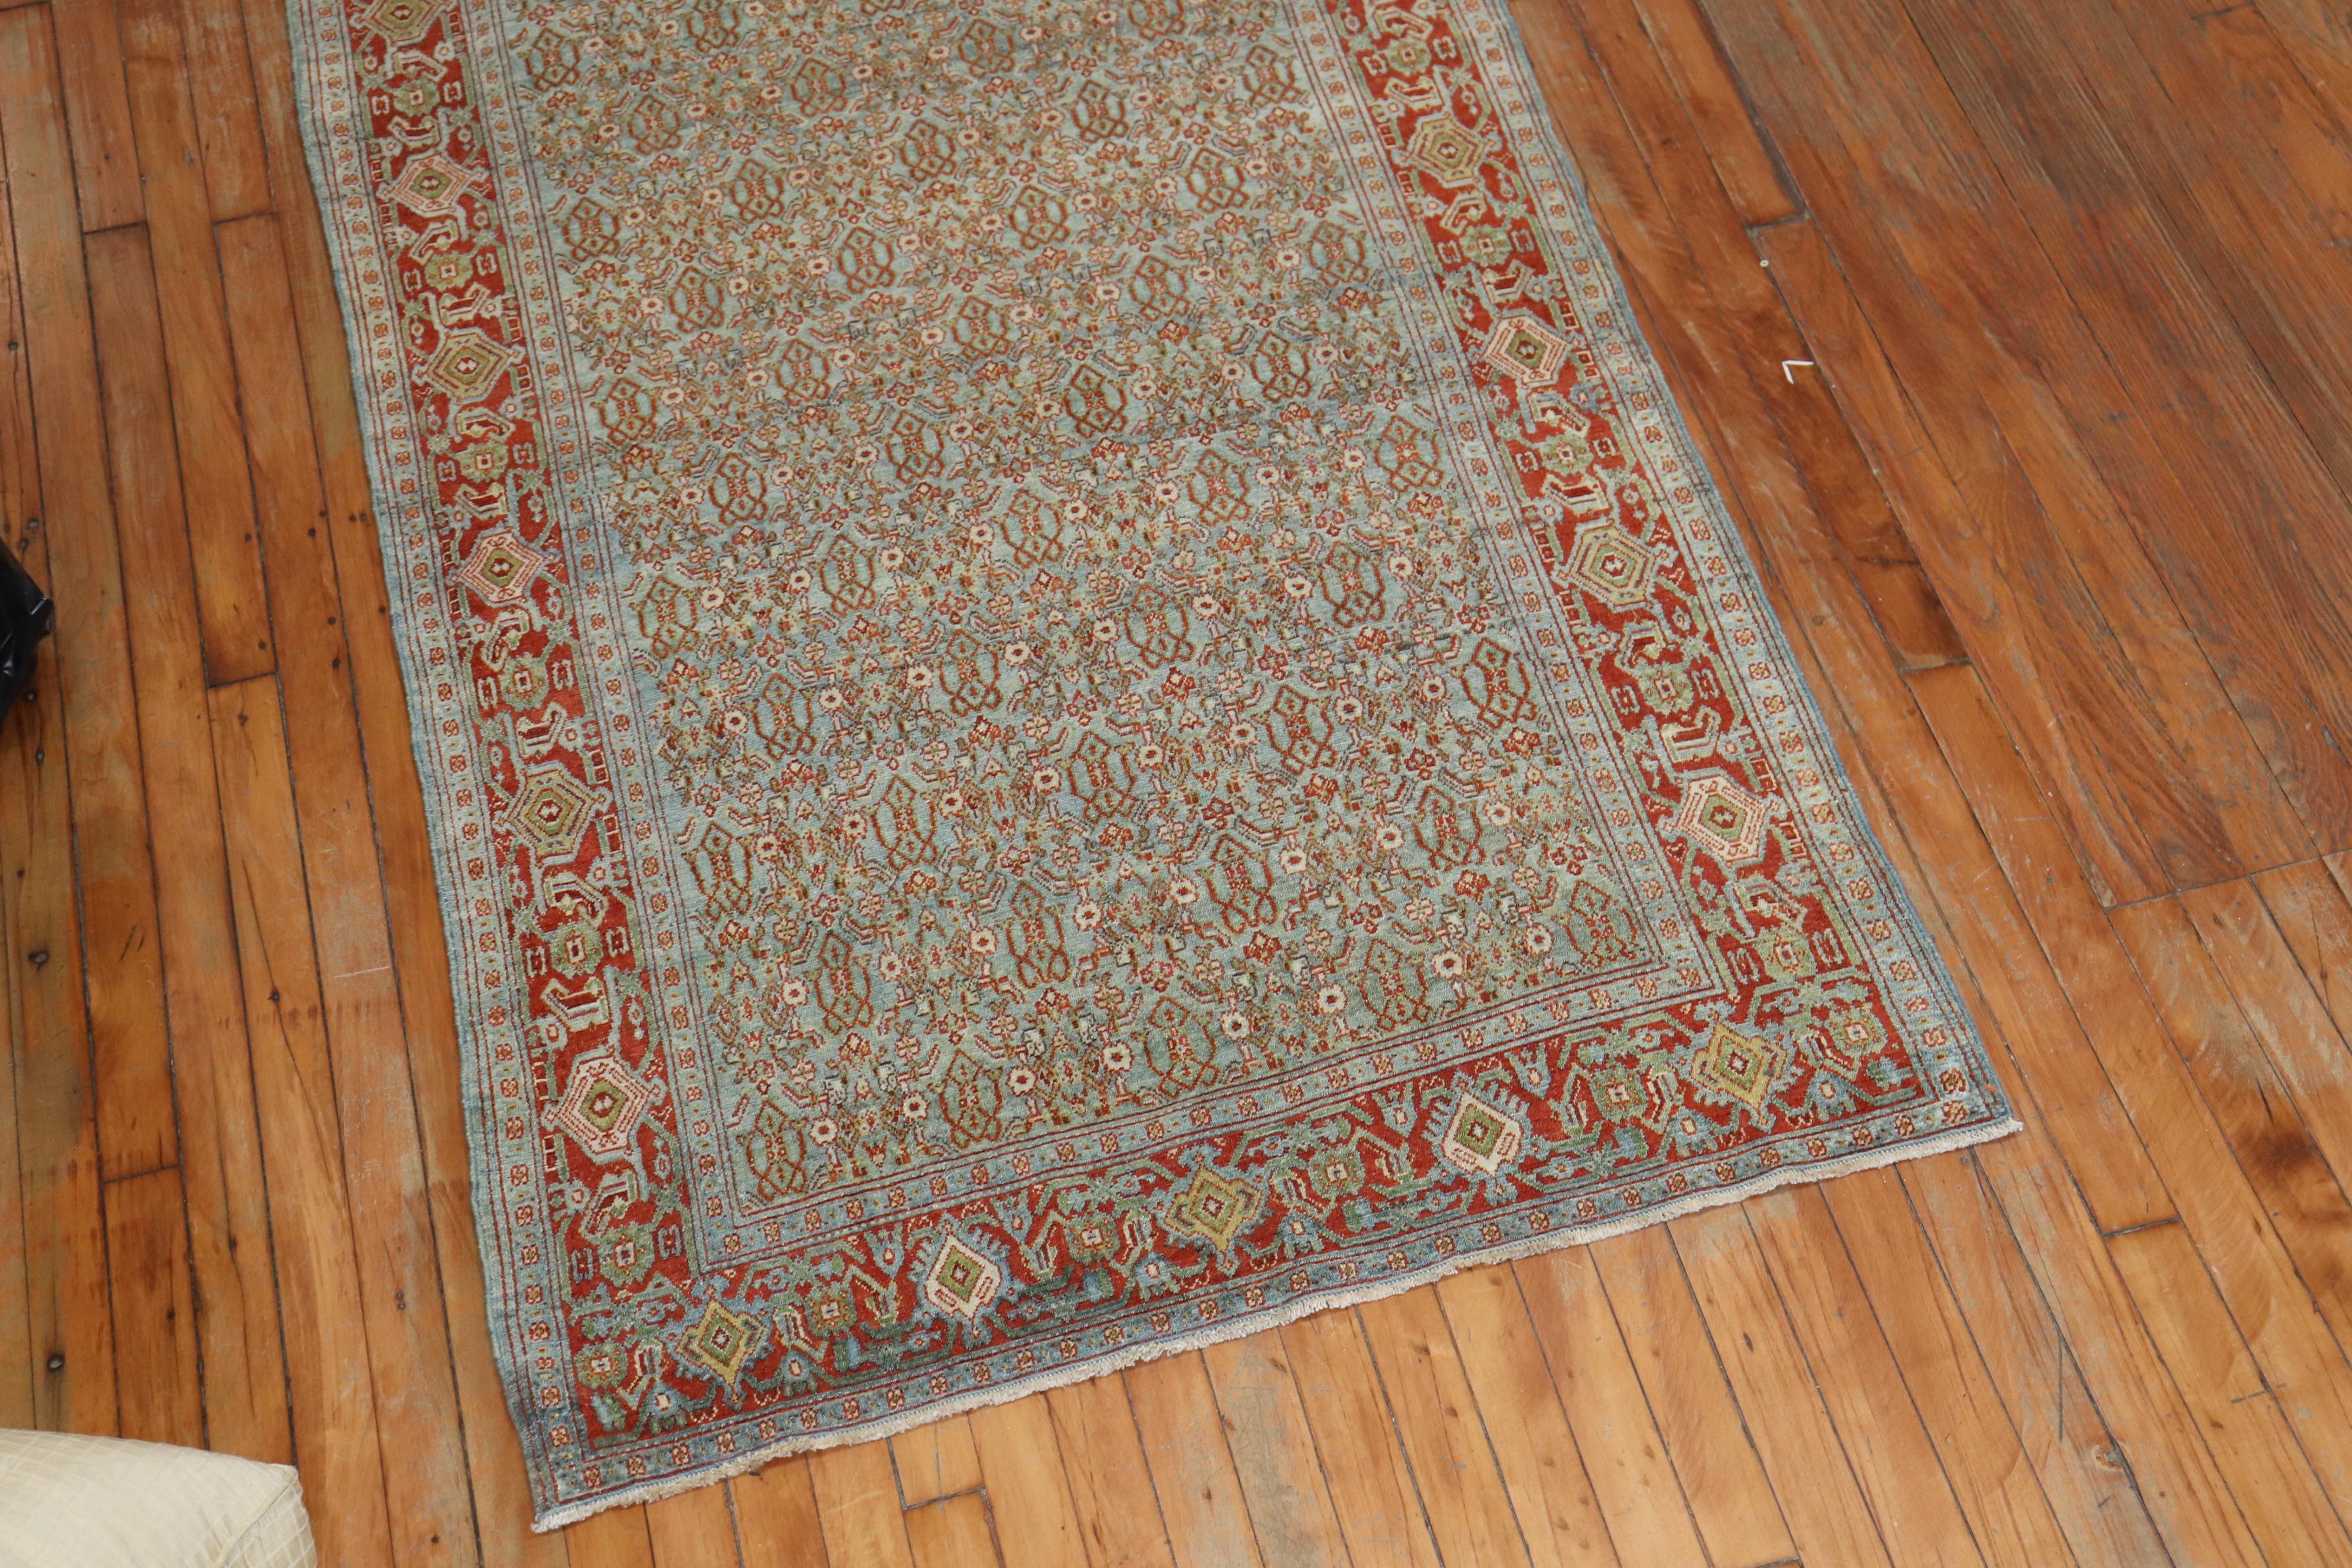 Feine Qualität schieferblauen Feld, rote Grenze persischen Senneh Läufer. Er hat das sich wiederholende klassische Herati-Muster, das man bei den meisten Senneh-Teppichen sieht. Die Farben sind verträumt, um 1910.

Größe: 3'7